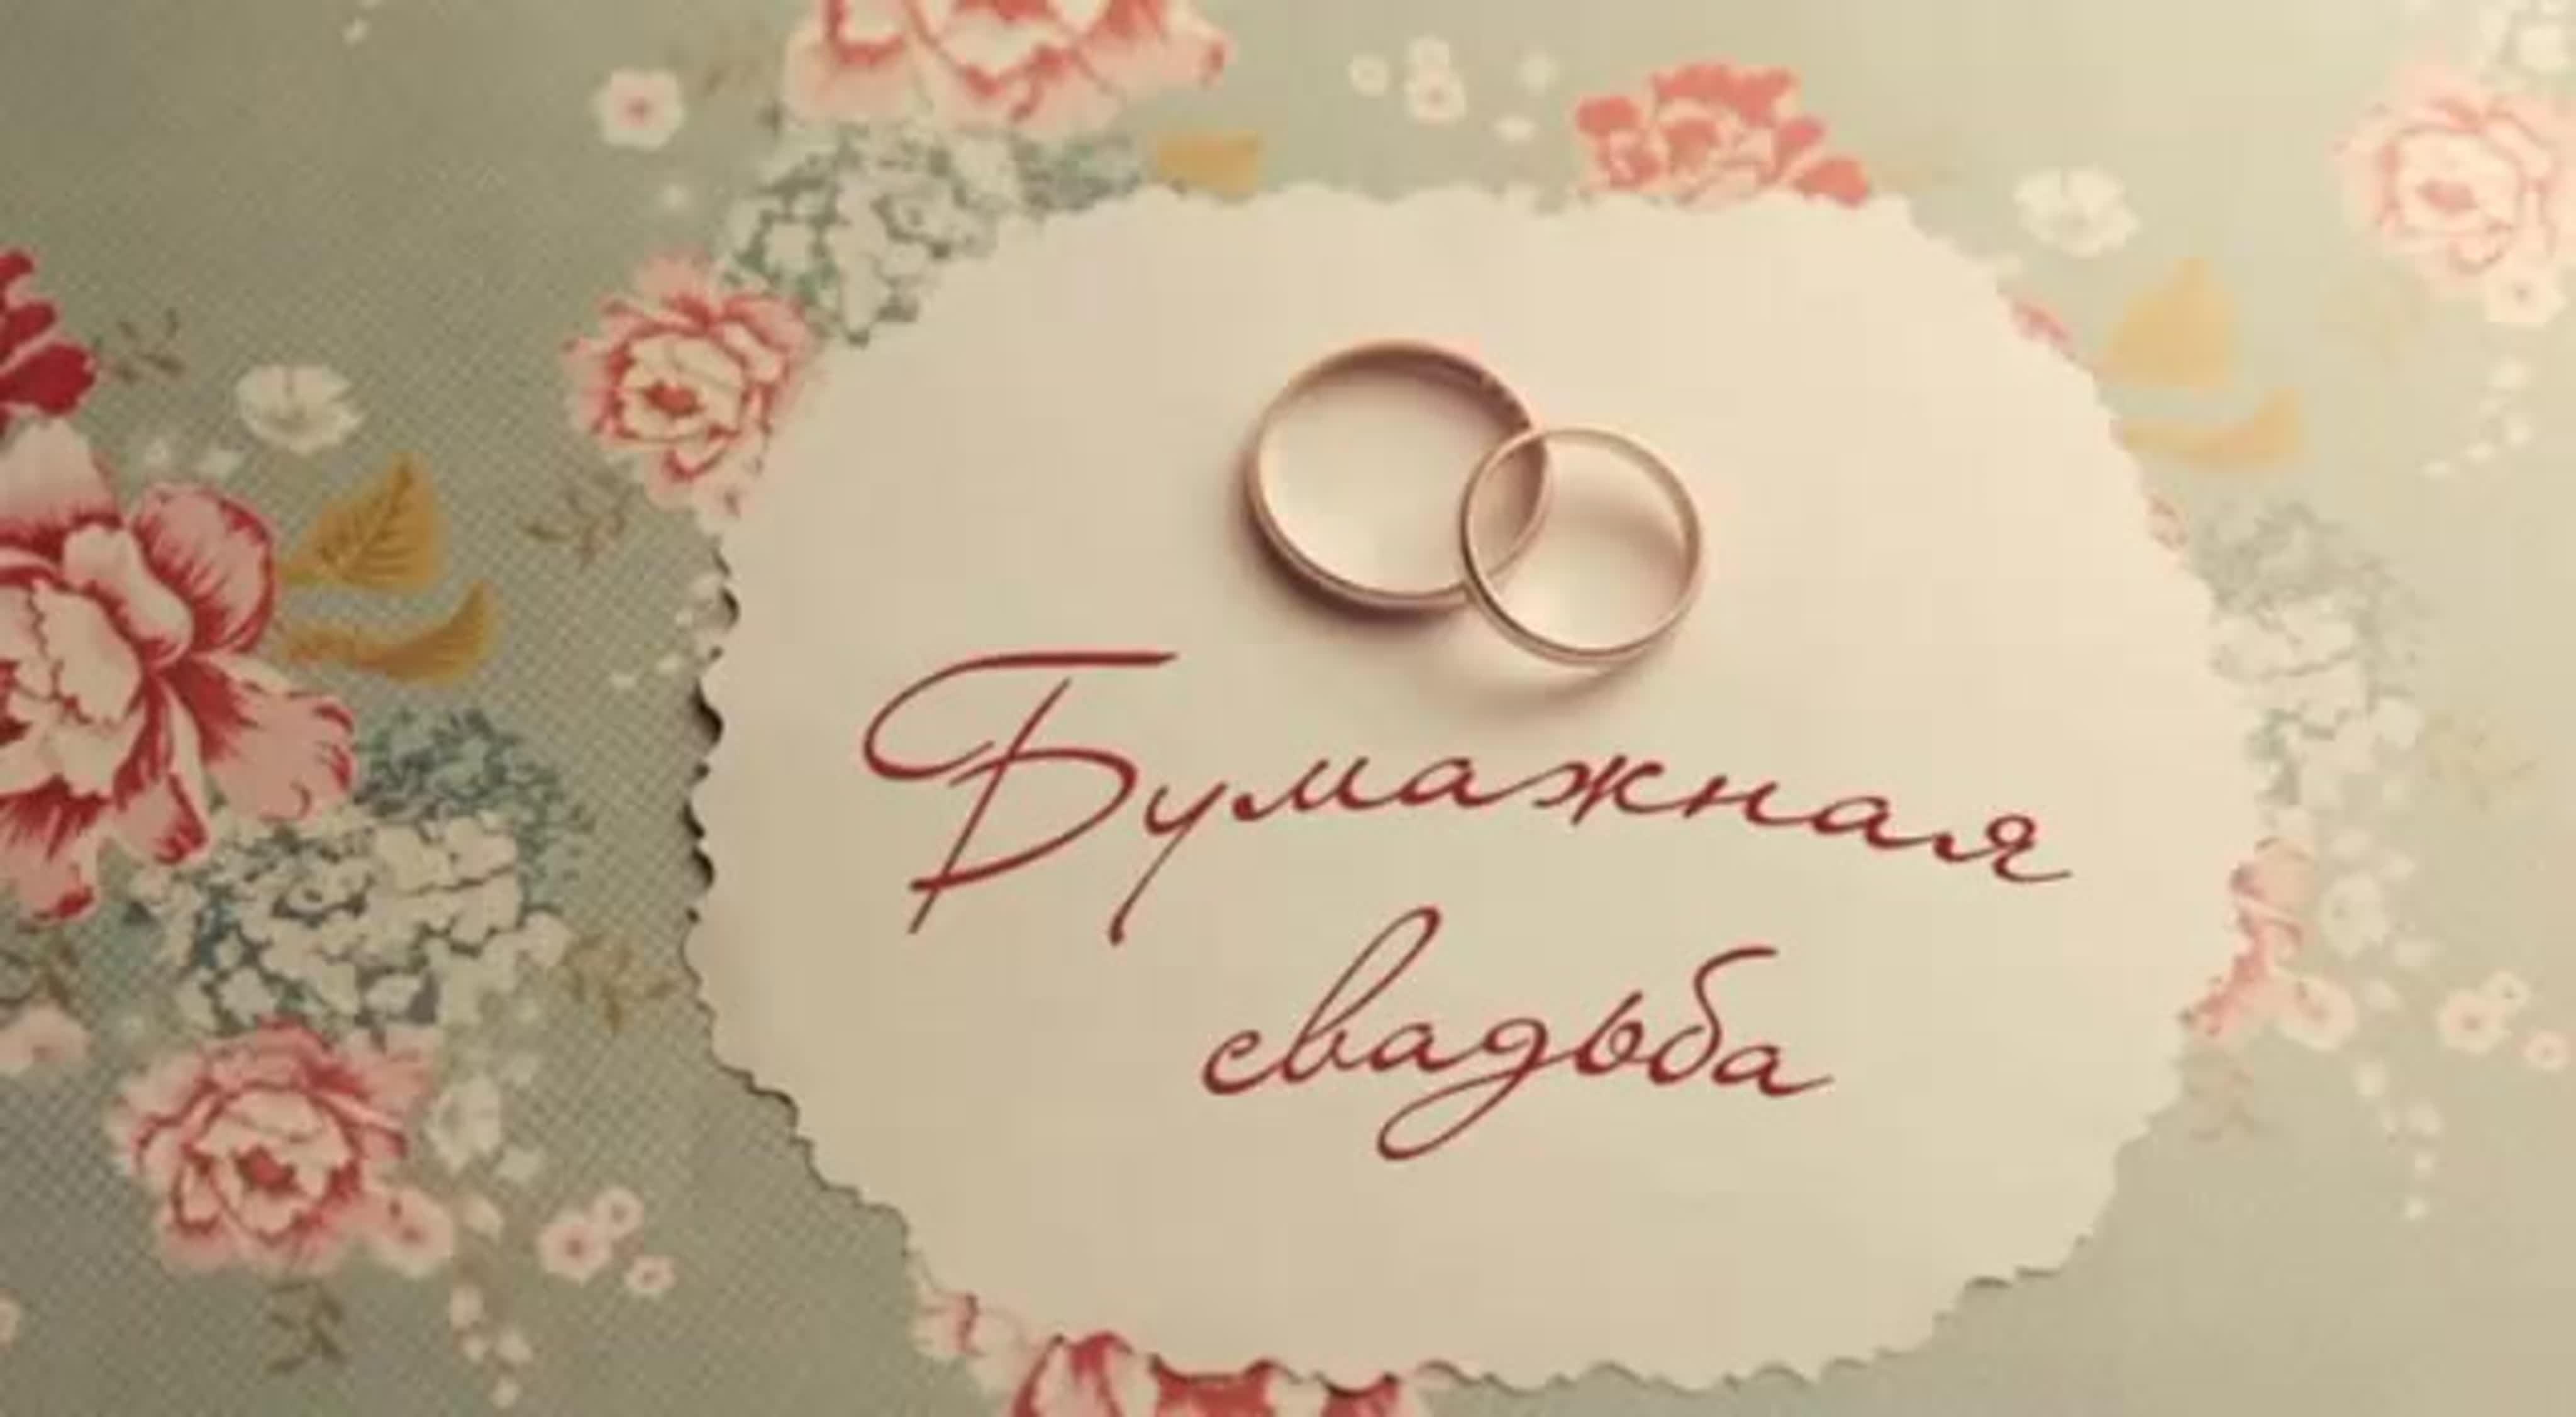 Бумажная свадьба (2 года) — какая свадьба, поздравления, стихи, проза, смс в прозе kinotv